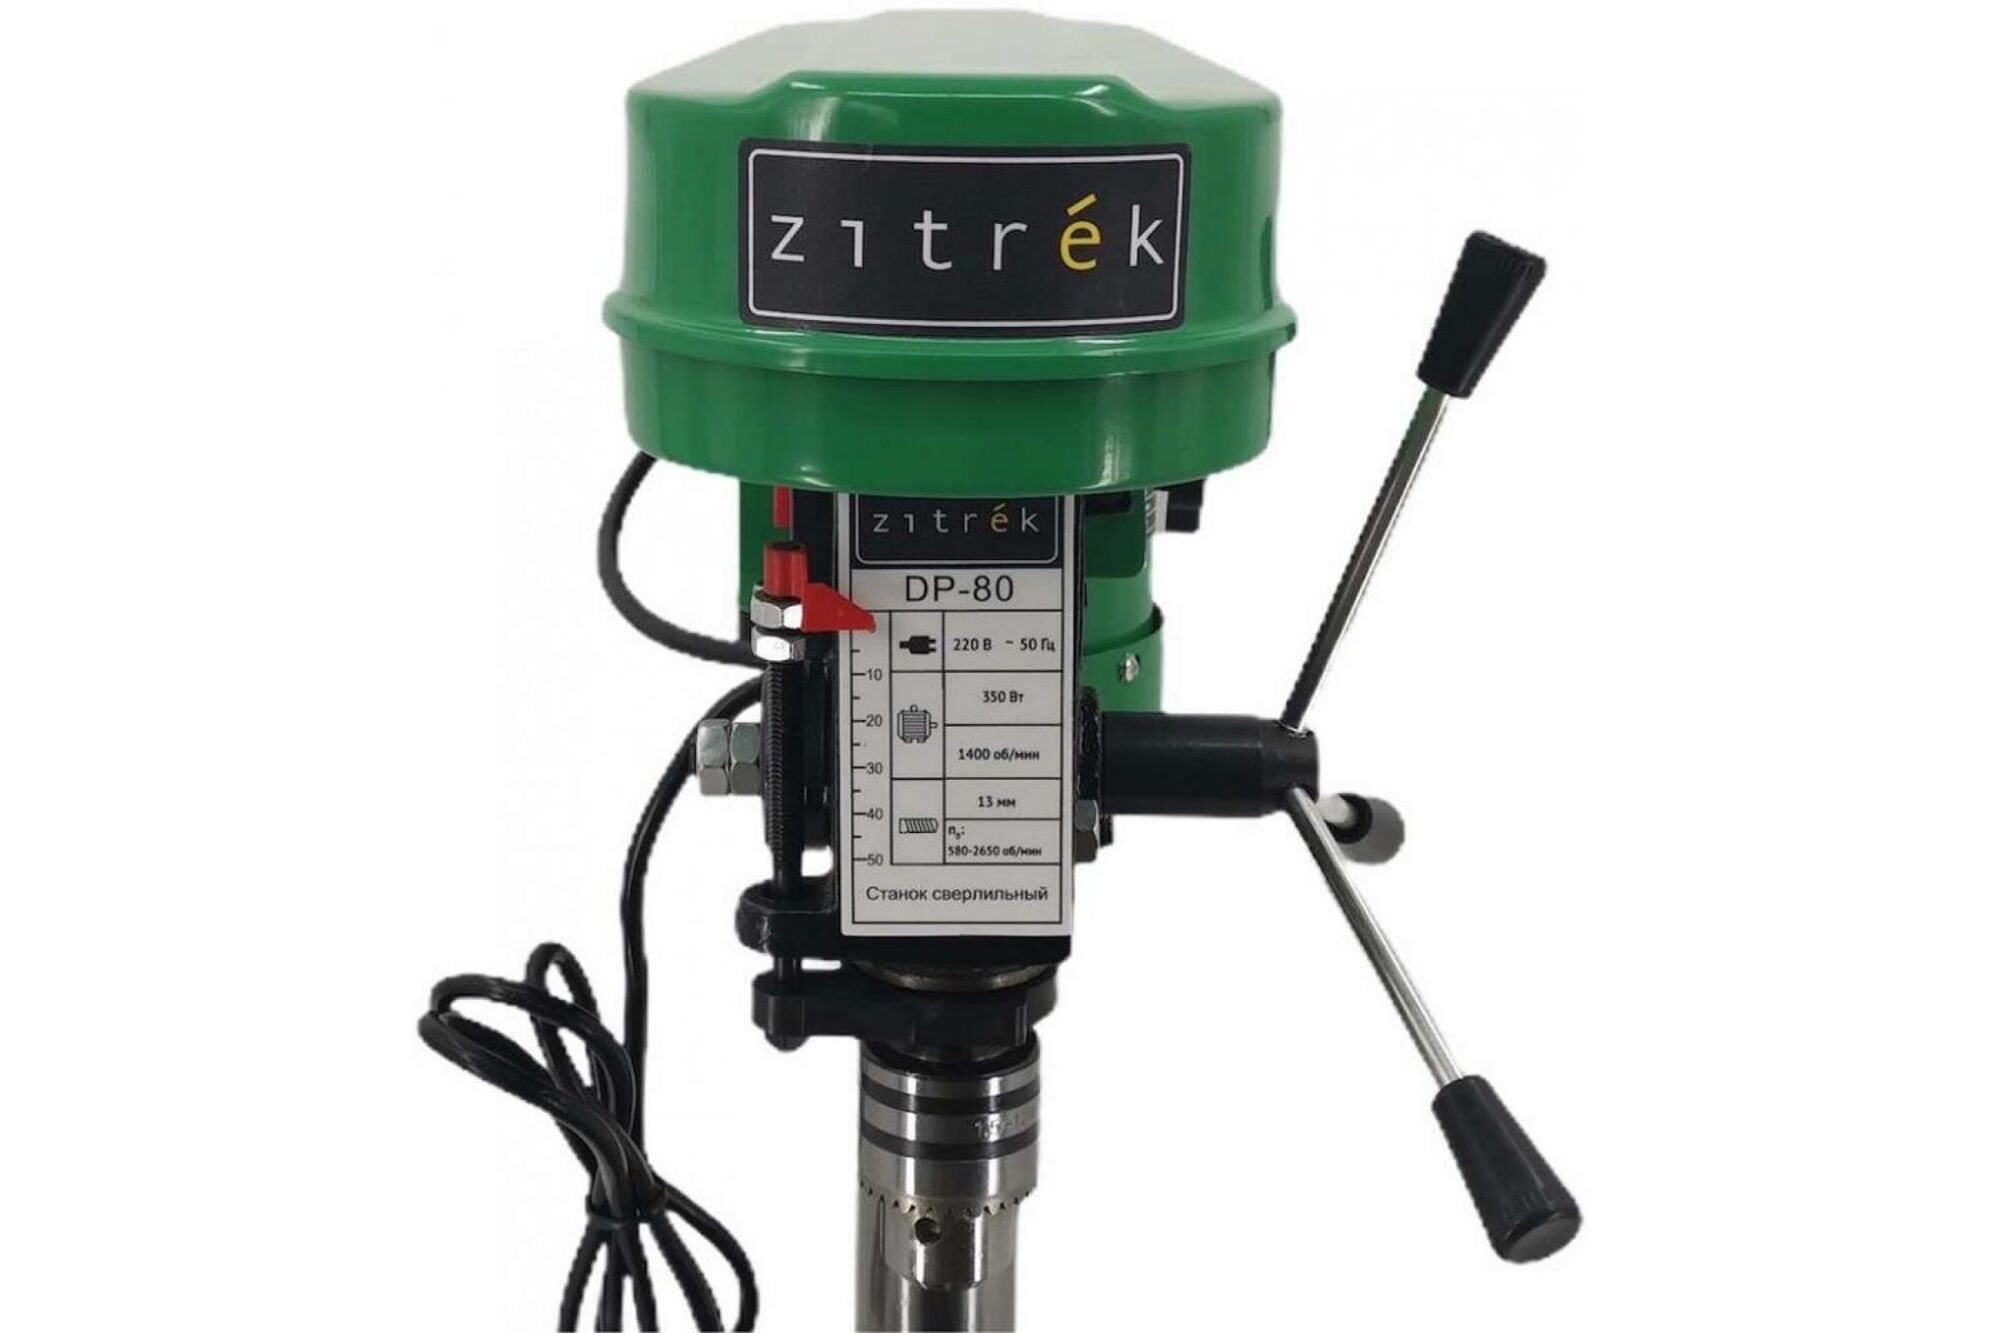 Сверлильный станок с тисками Zitrek DP-80 220В/350Вт/5скор/D 13 мм 3